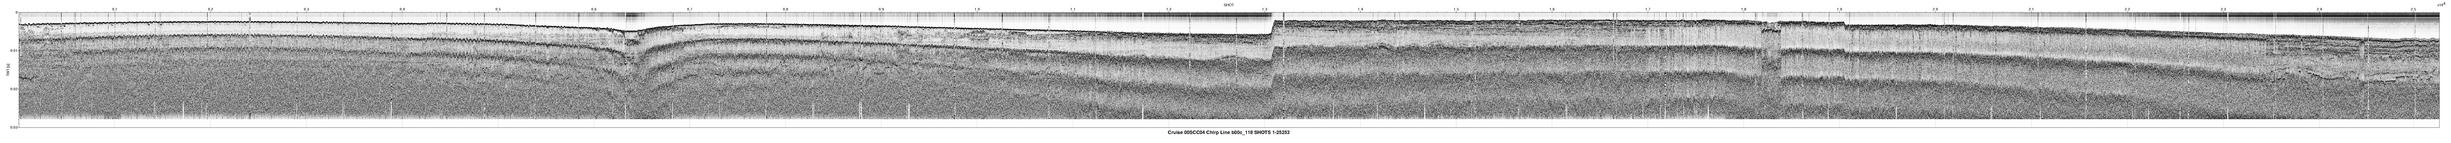 00SCC04 b00c_118 seismic profile image